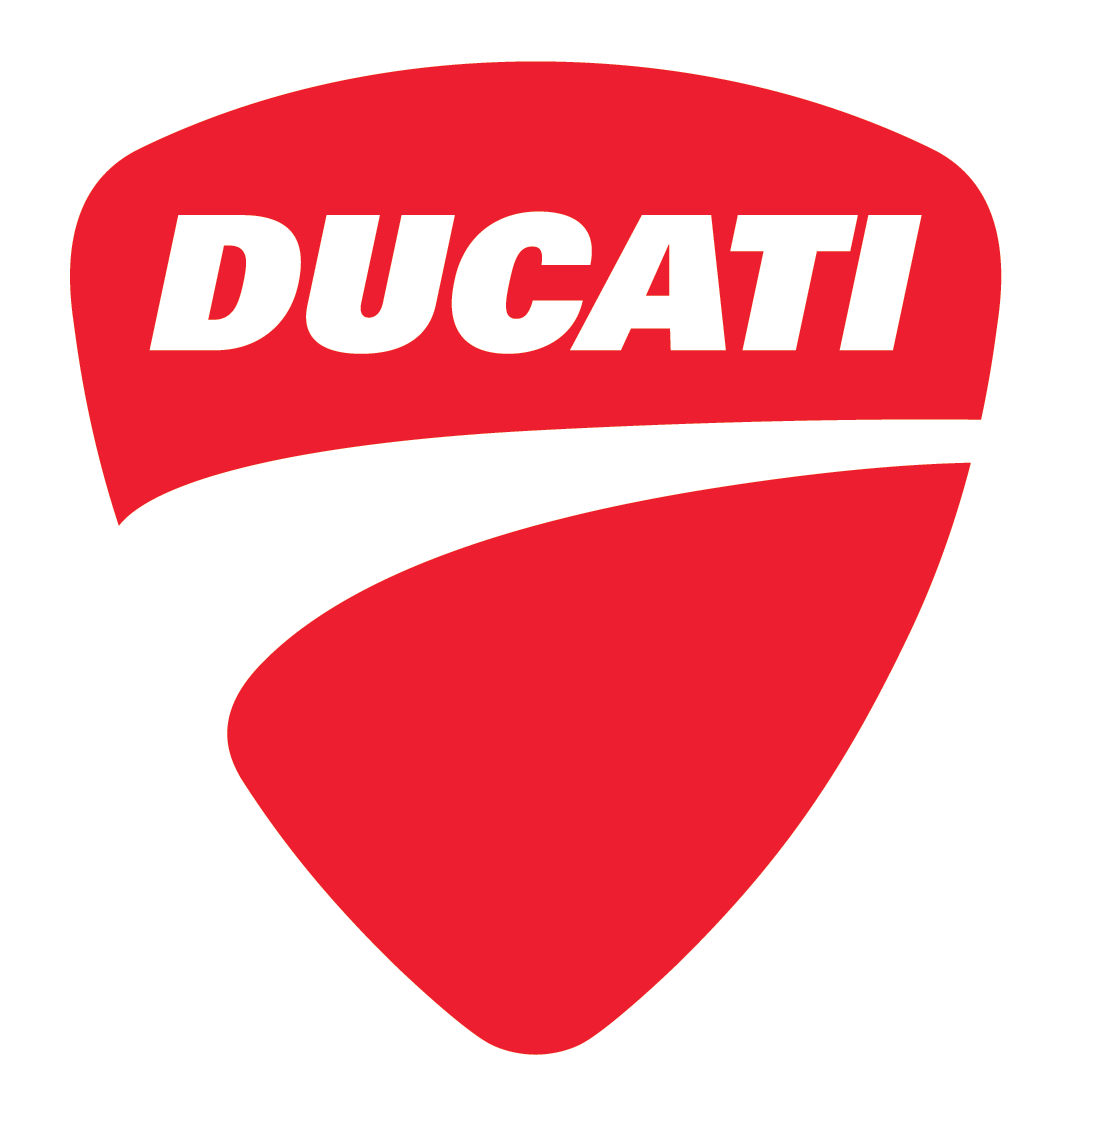 Red Ducati shield